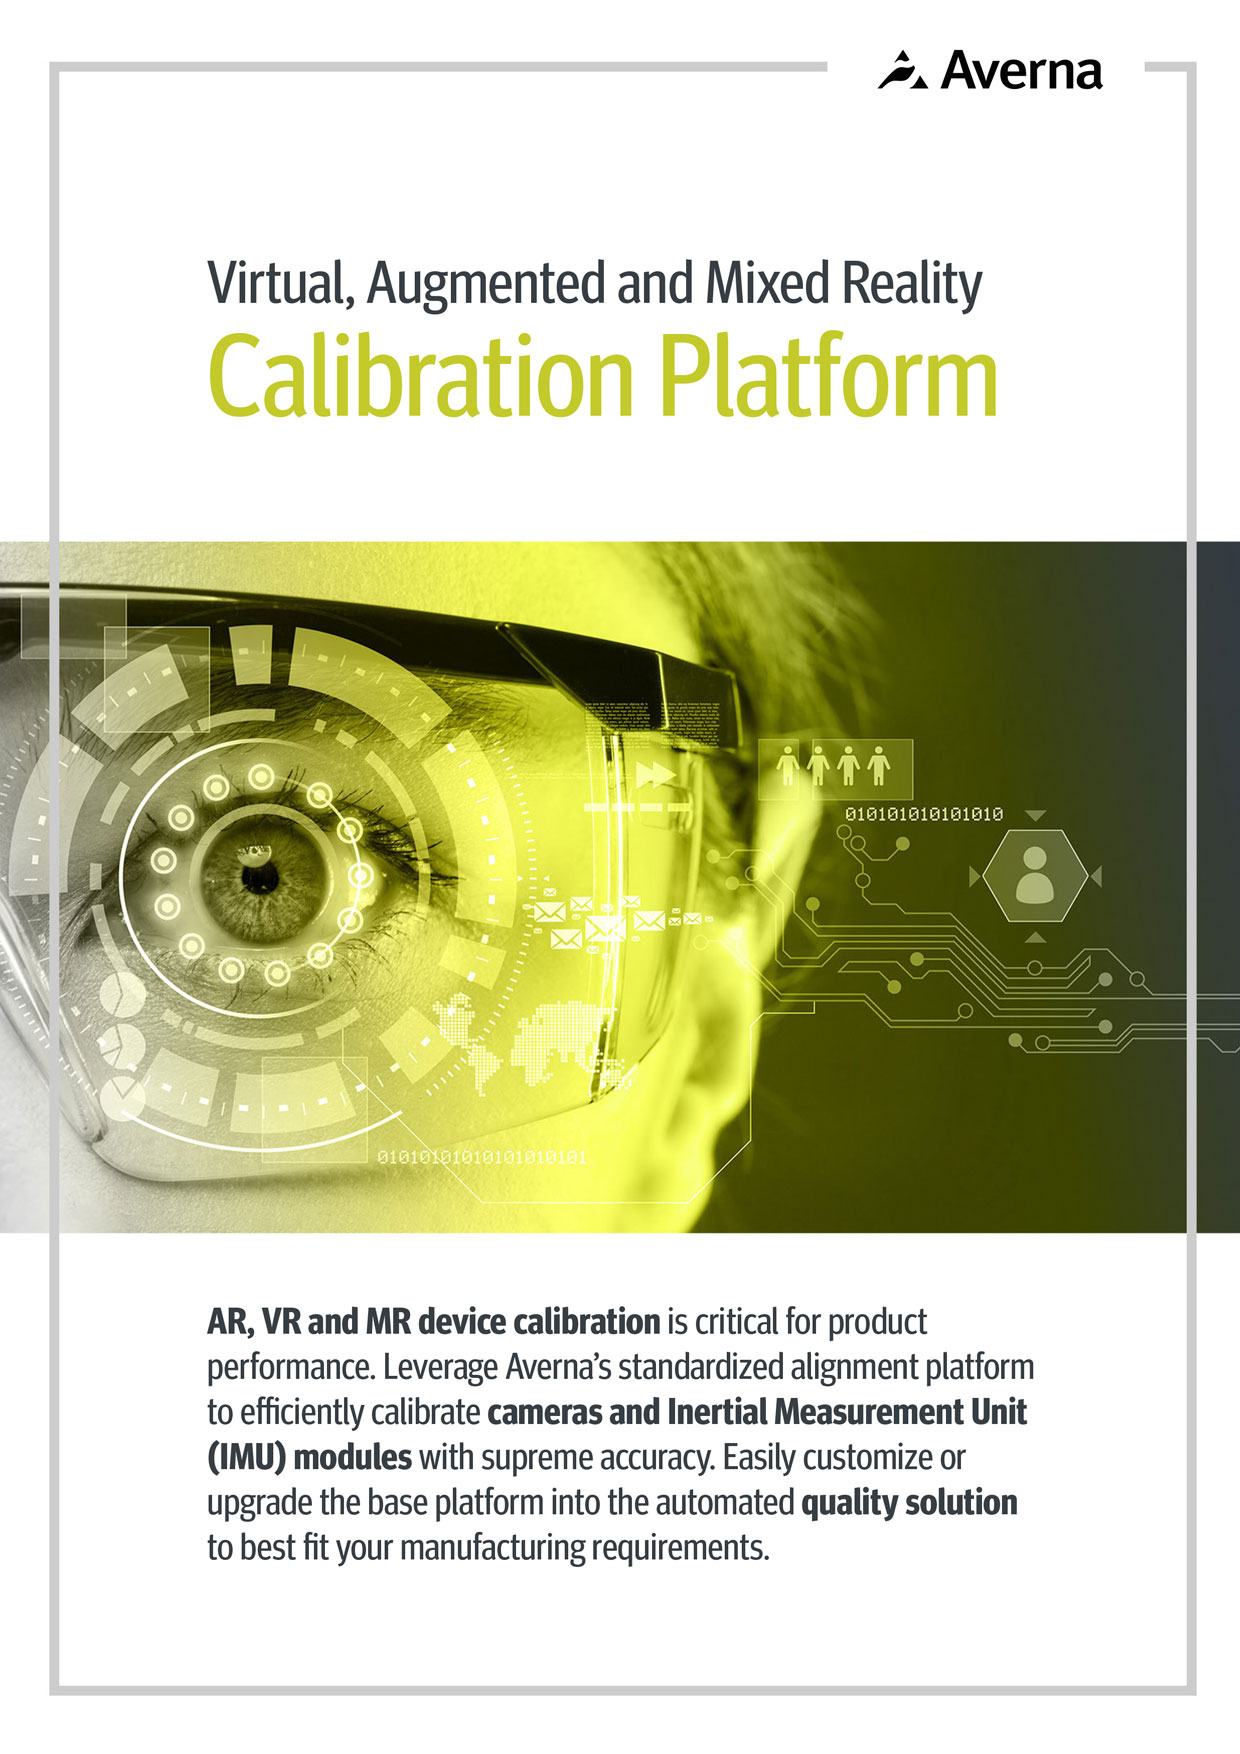 Cover of the VR/AR/MR Calibration Platform Brochure